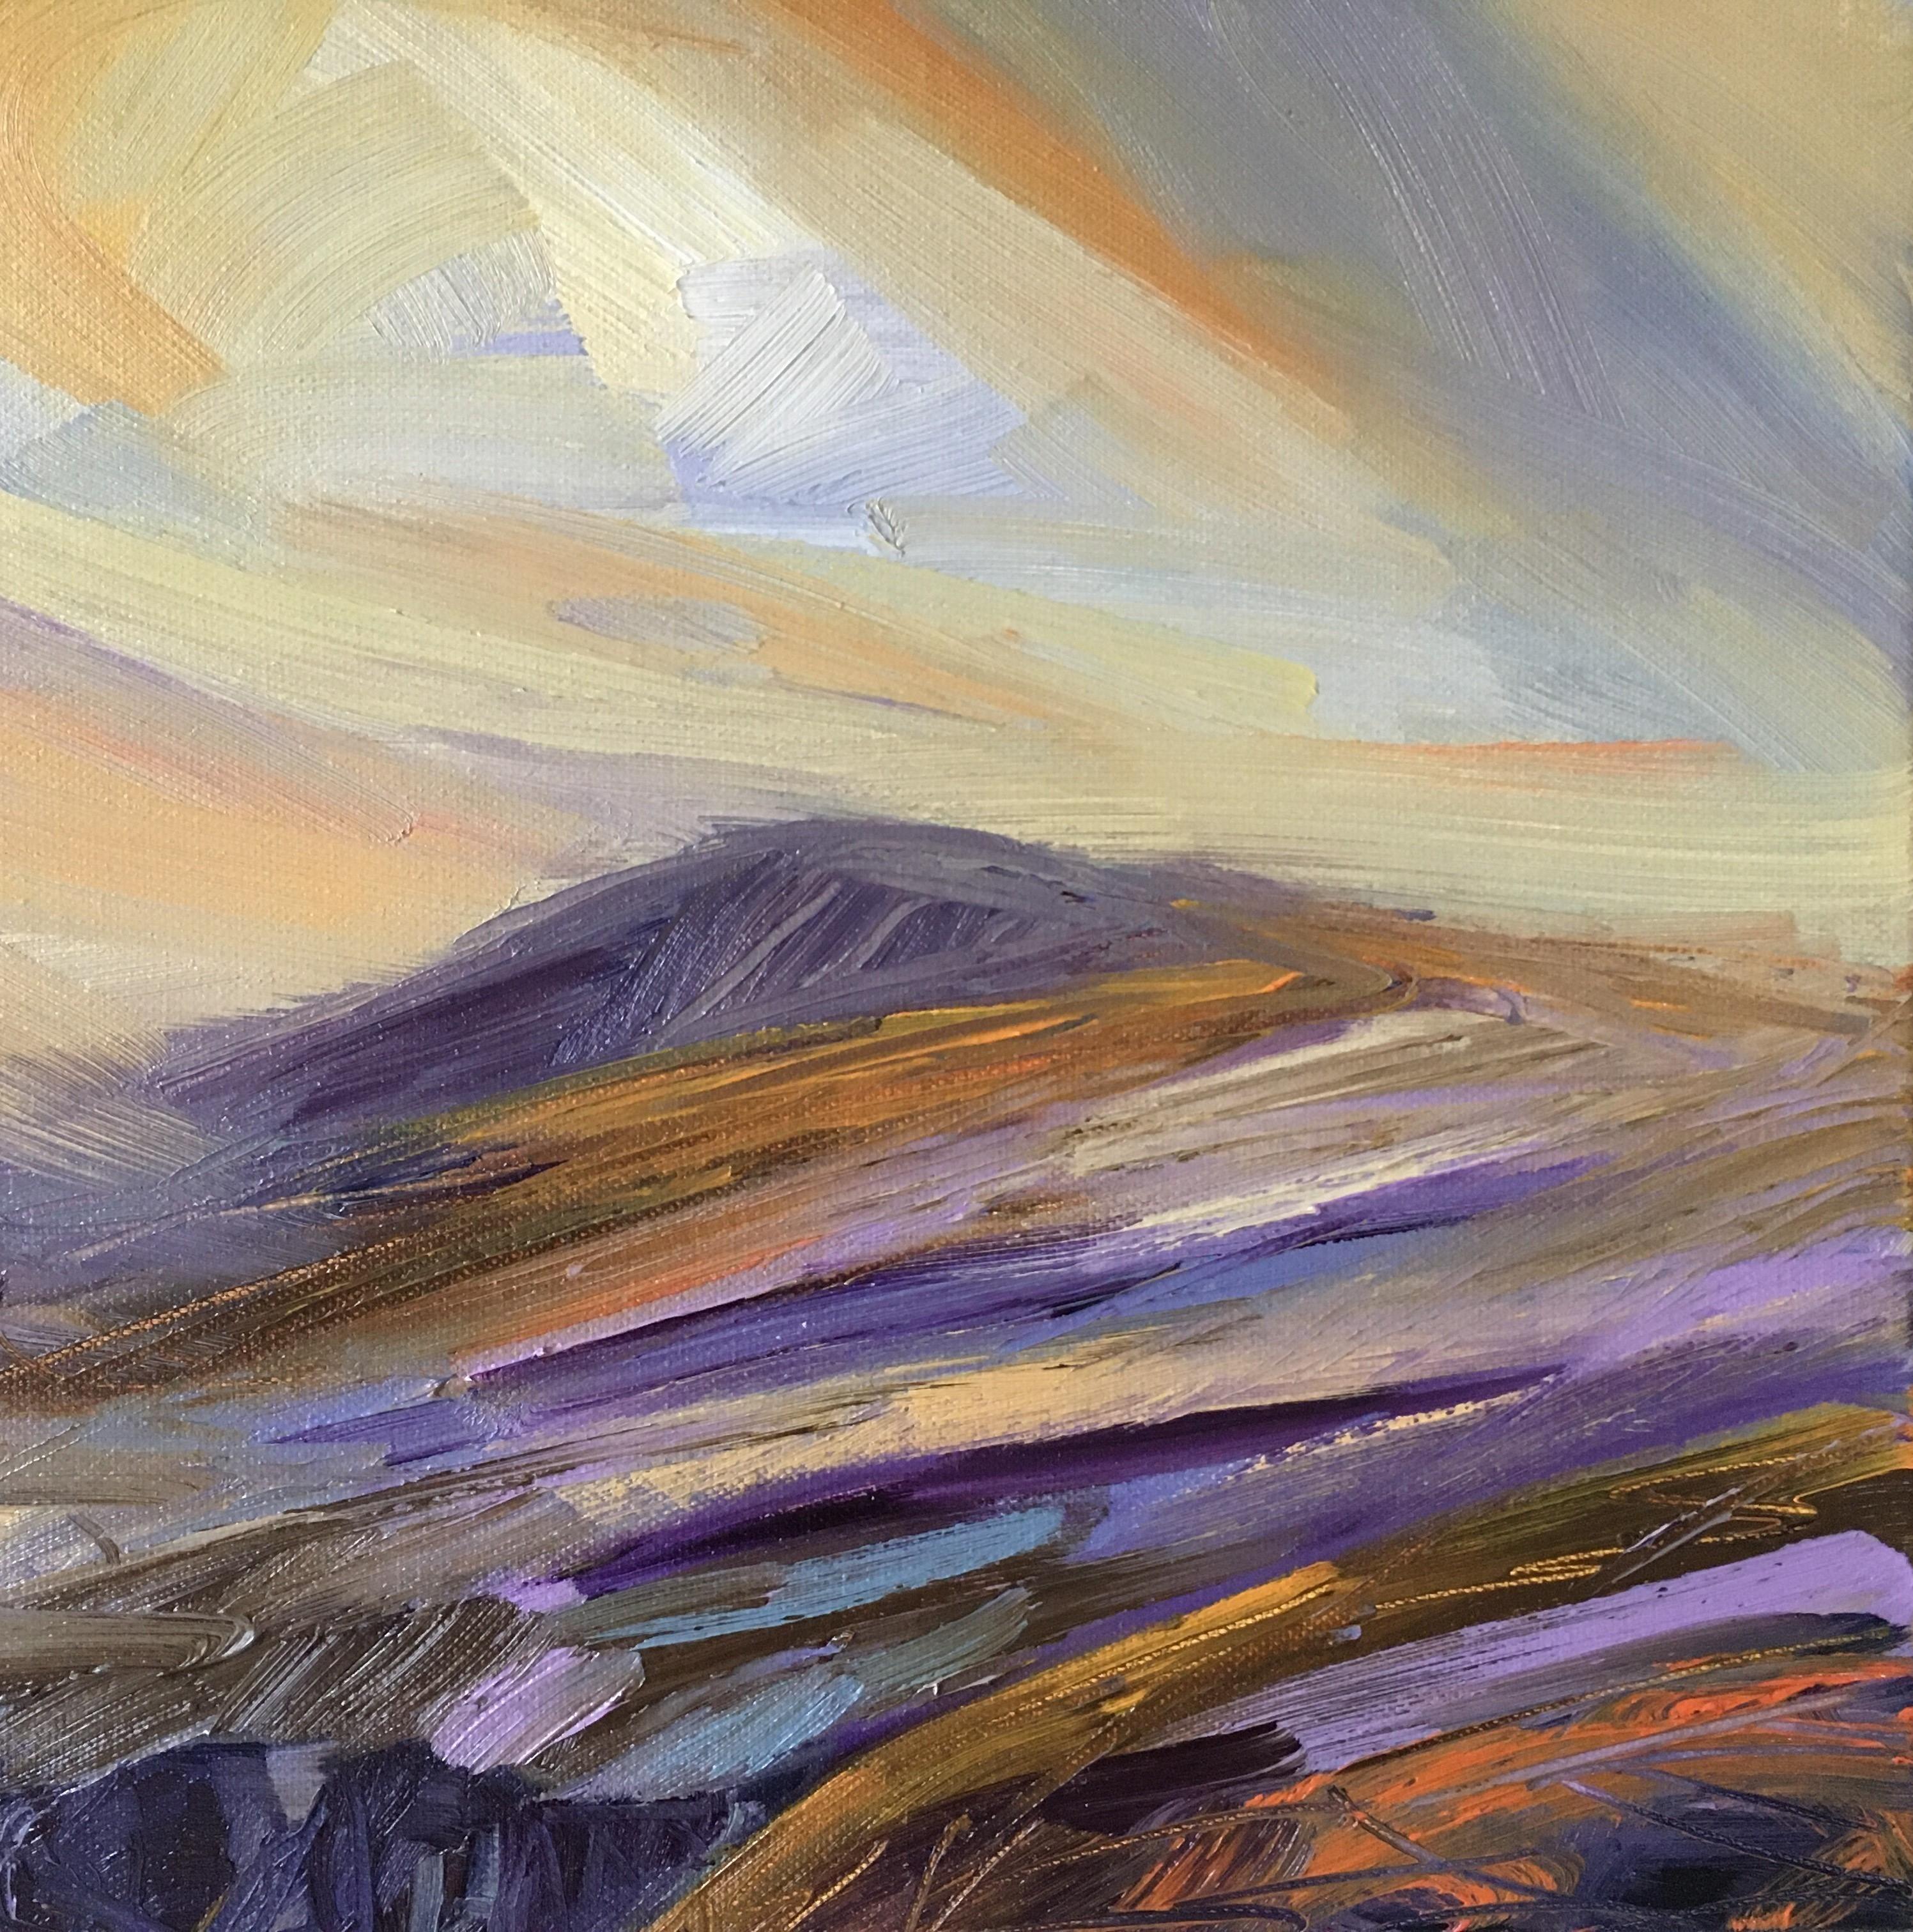 Suzanne Winn
Montagne III
Peinture originale de paysage
Huile sur toile
Taille de l'image : H 30cm x L 30cm x P 3,5cm
Peint sur une toile à bord profond qui est cordée et prête à être suspendue.

Je trouve le paysage du Pembrokeshire très inspirant.